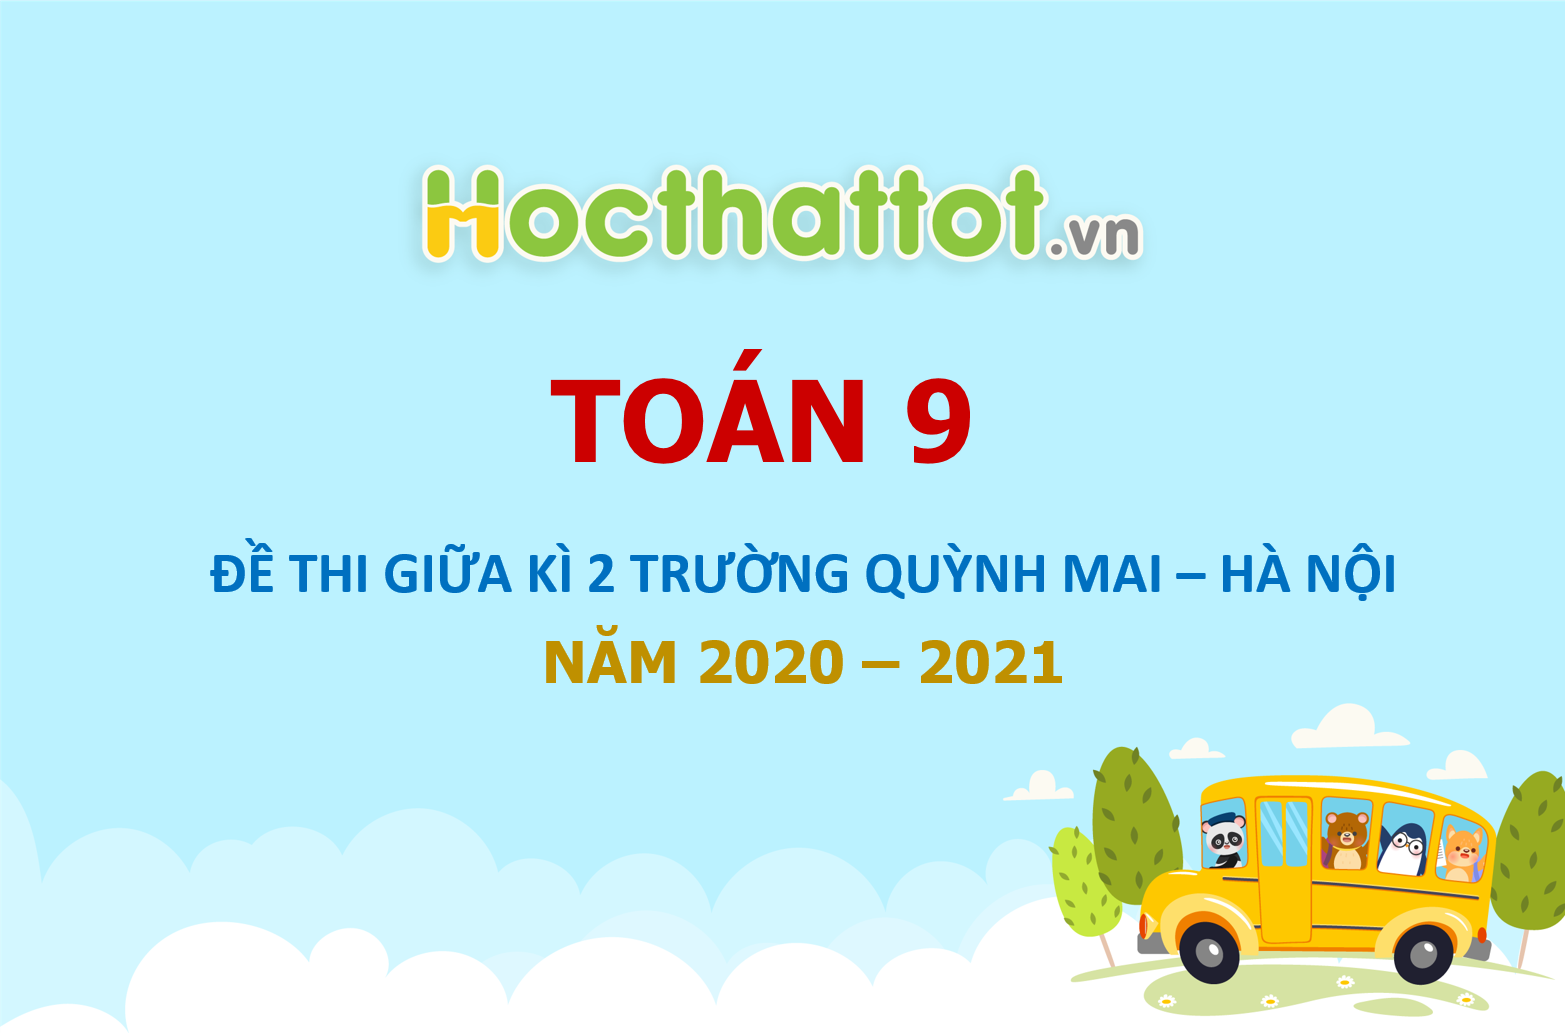 de-kiem-tra-giua-ki-2-toan-9-nam-2020-2021-truong-quynh-mai-ha-noi